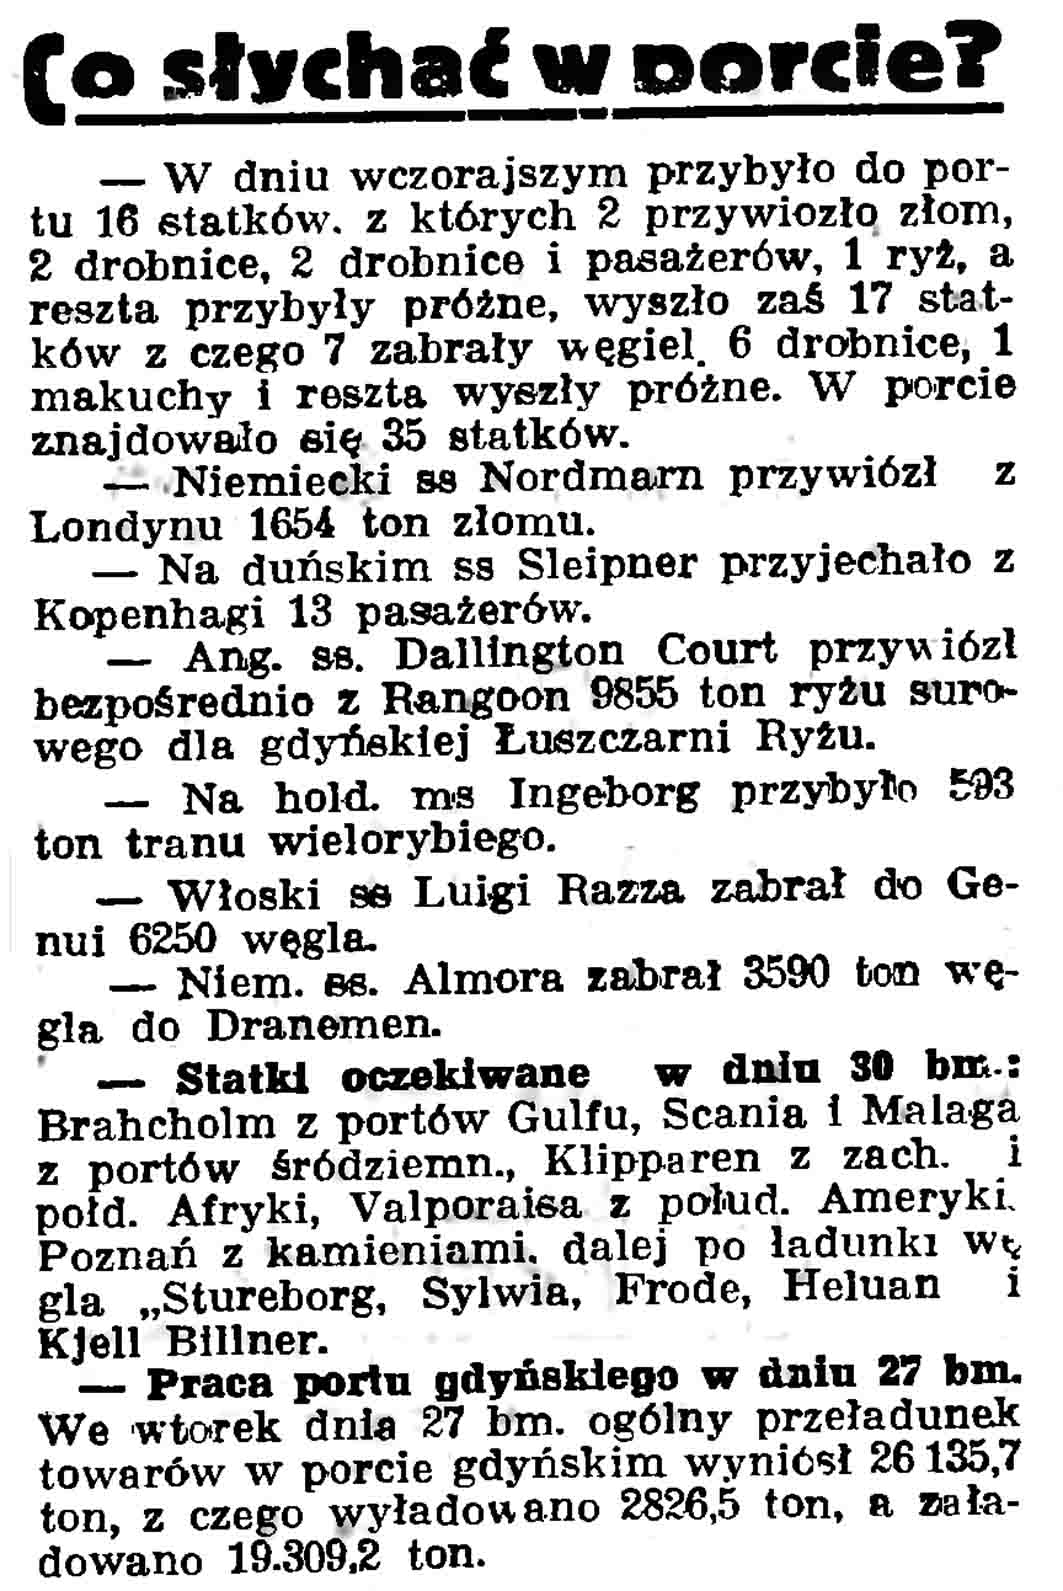 Co słychać w porcie? // Gazeta Gdańska. - 1937, nr 100, s. 9